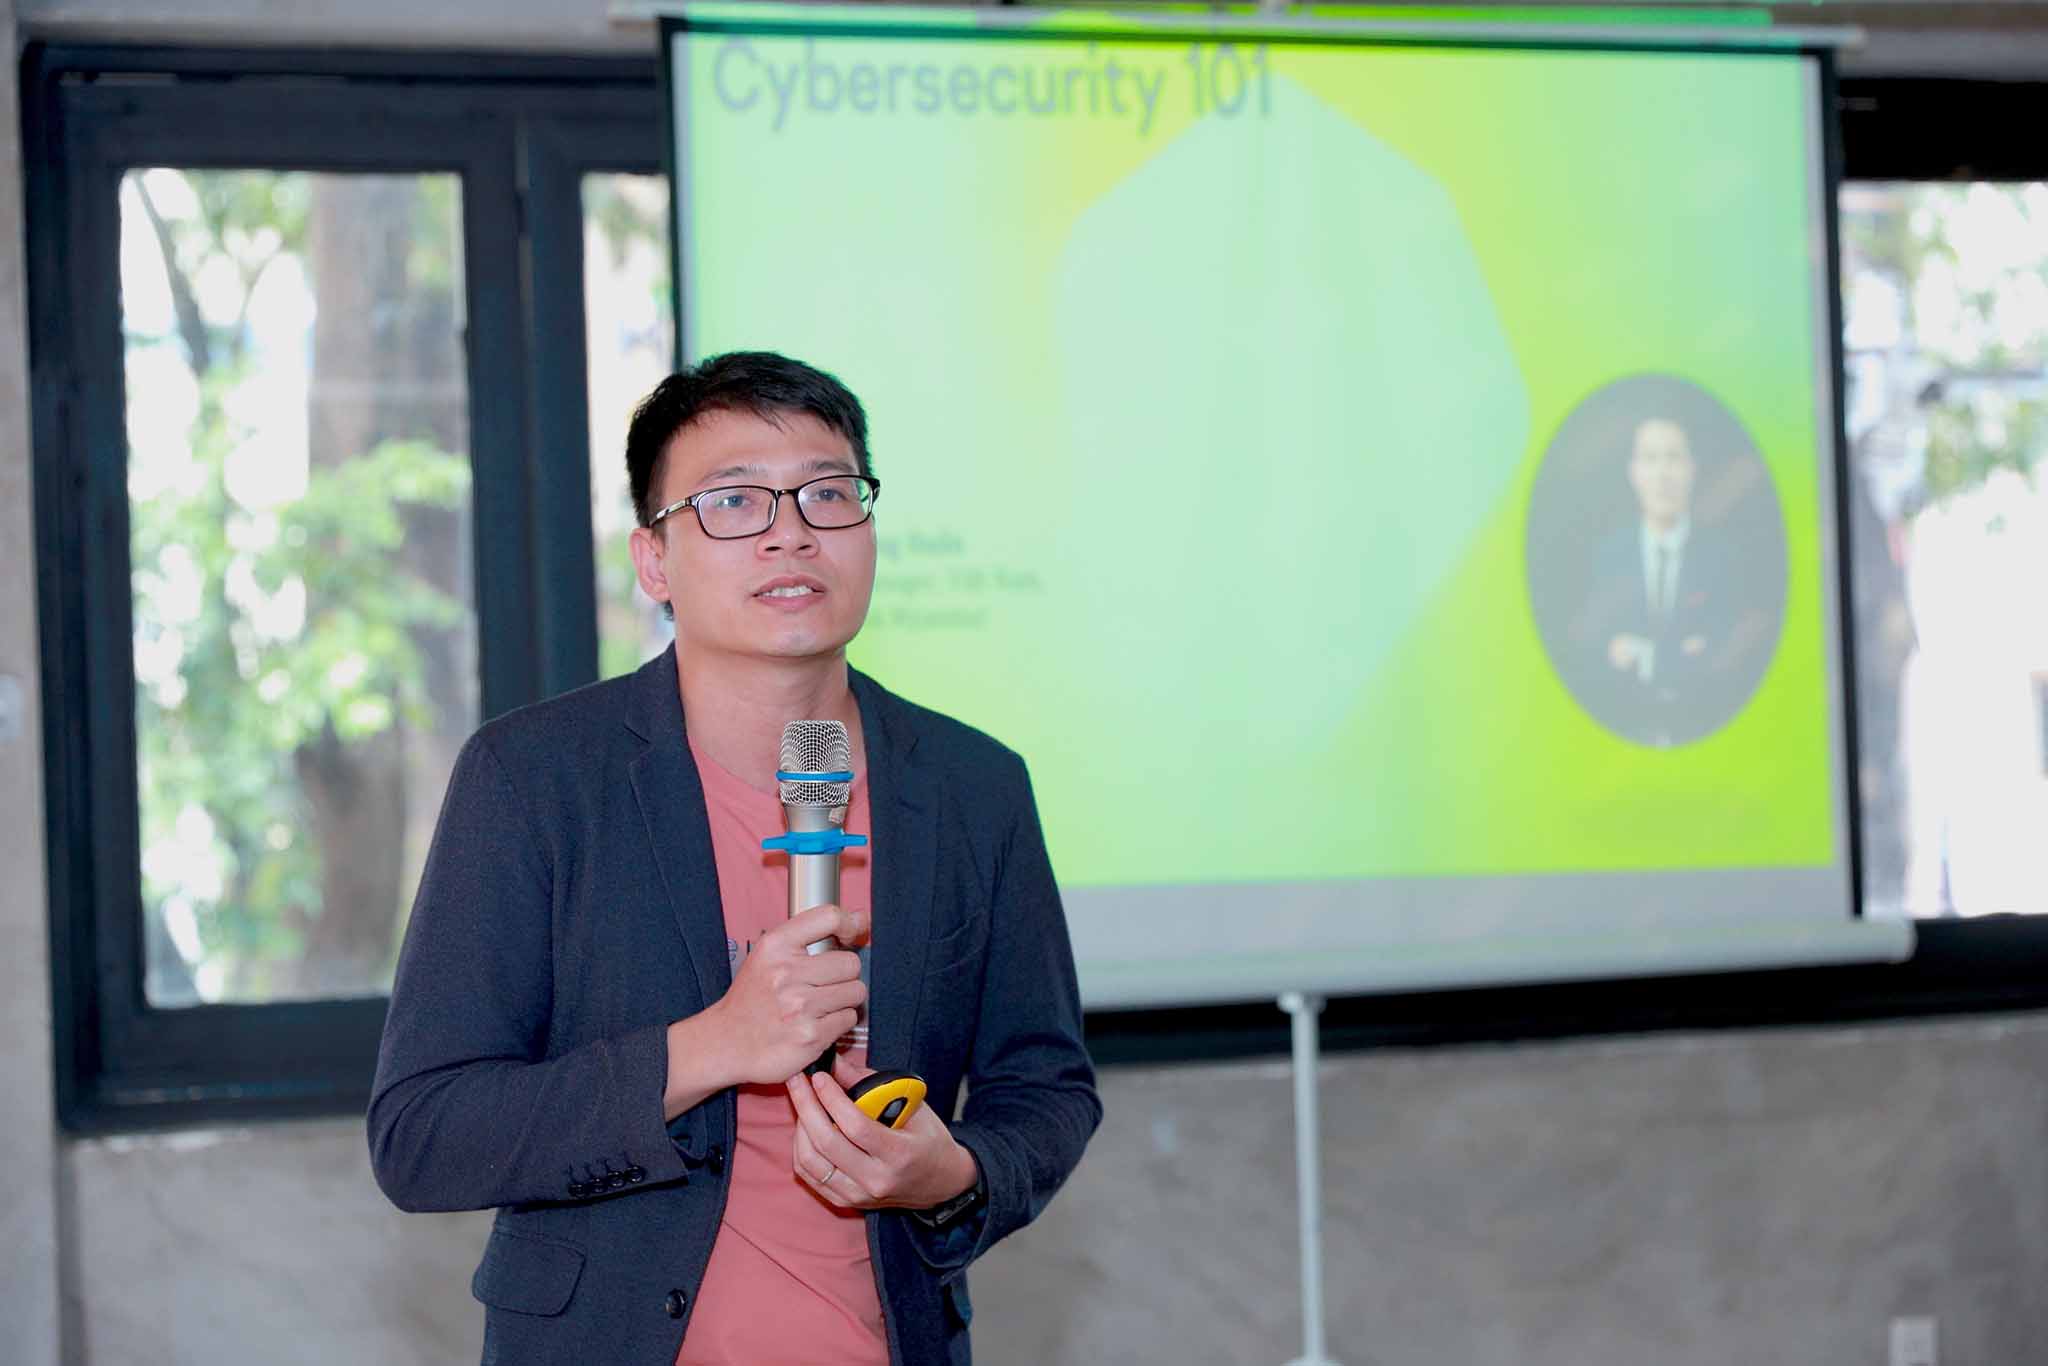 Kaspersky ra mắt dịch vụ Digital Footprint Intelligence tại Việt Nam